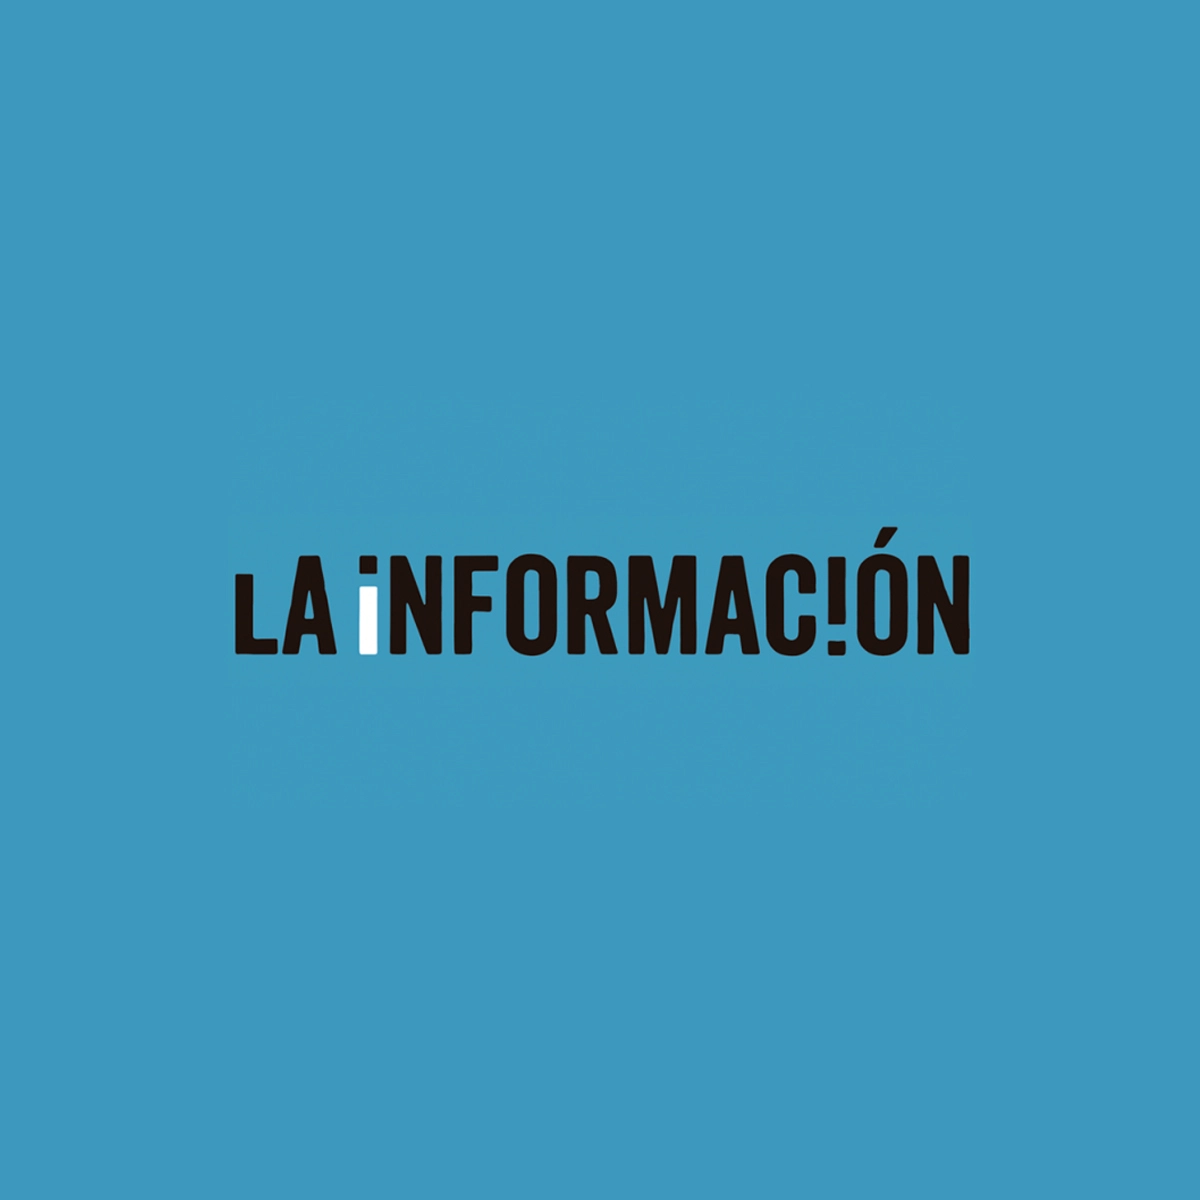 La informacion logo